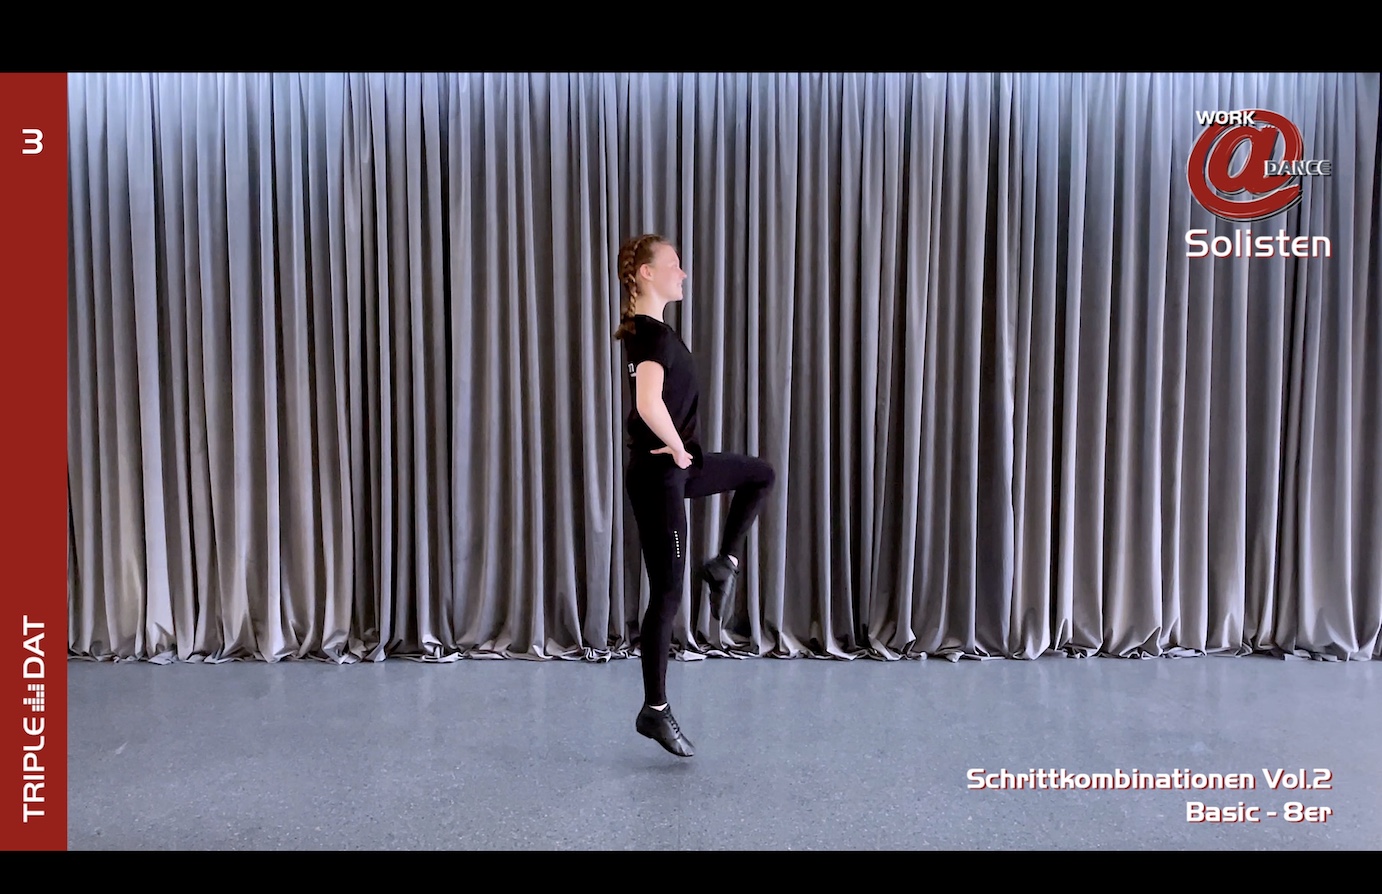 Work@Dance Solisten Schrittkombinationen 02 - Basic